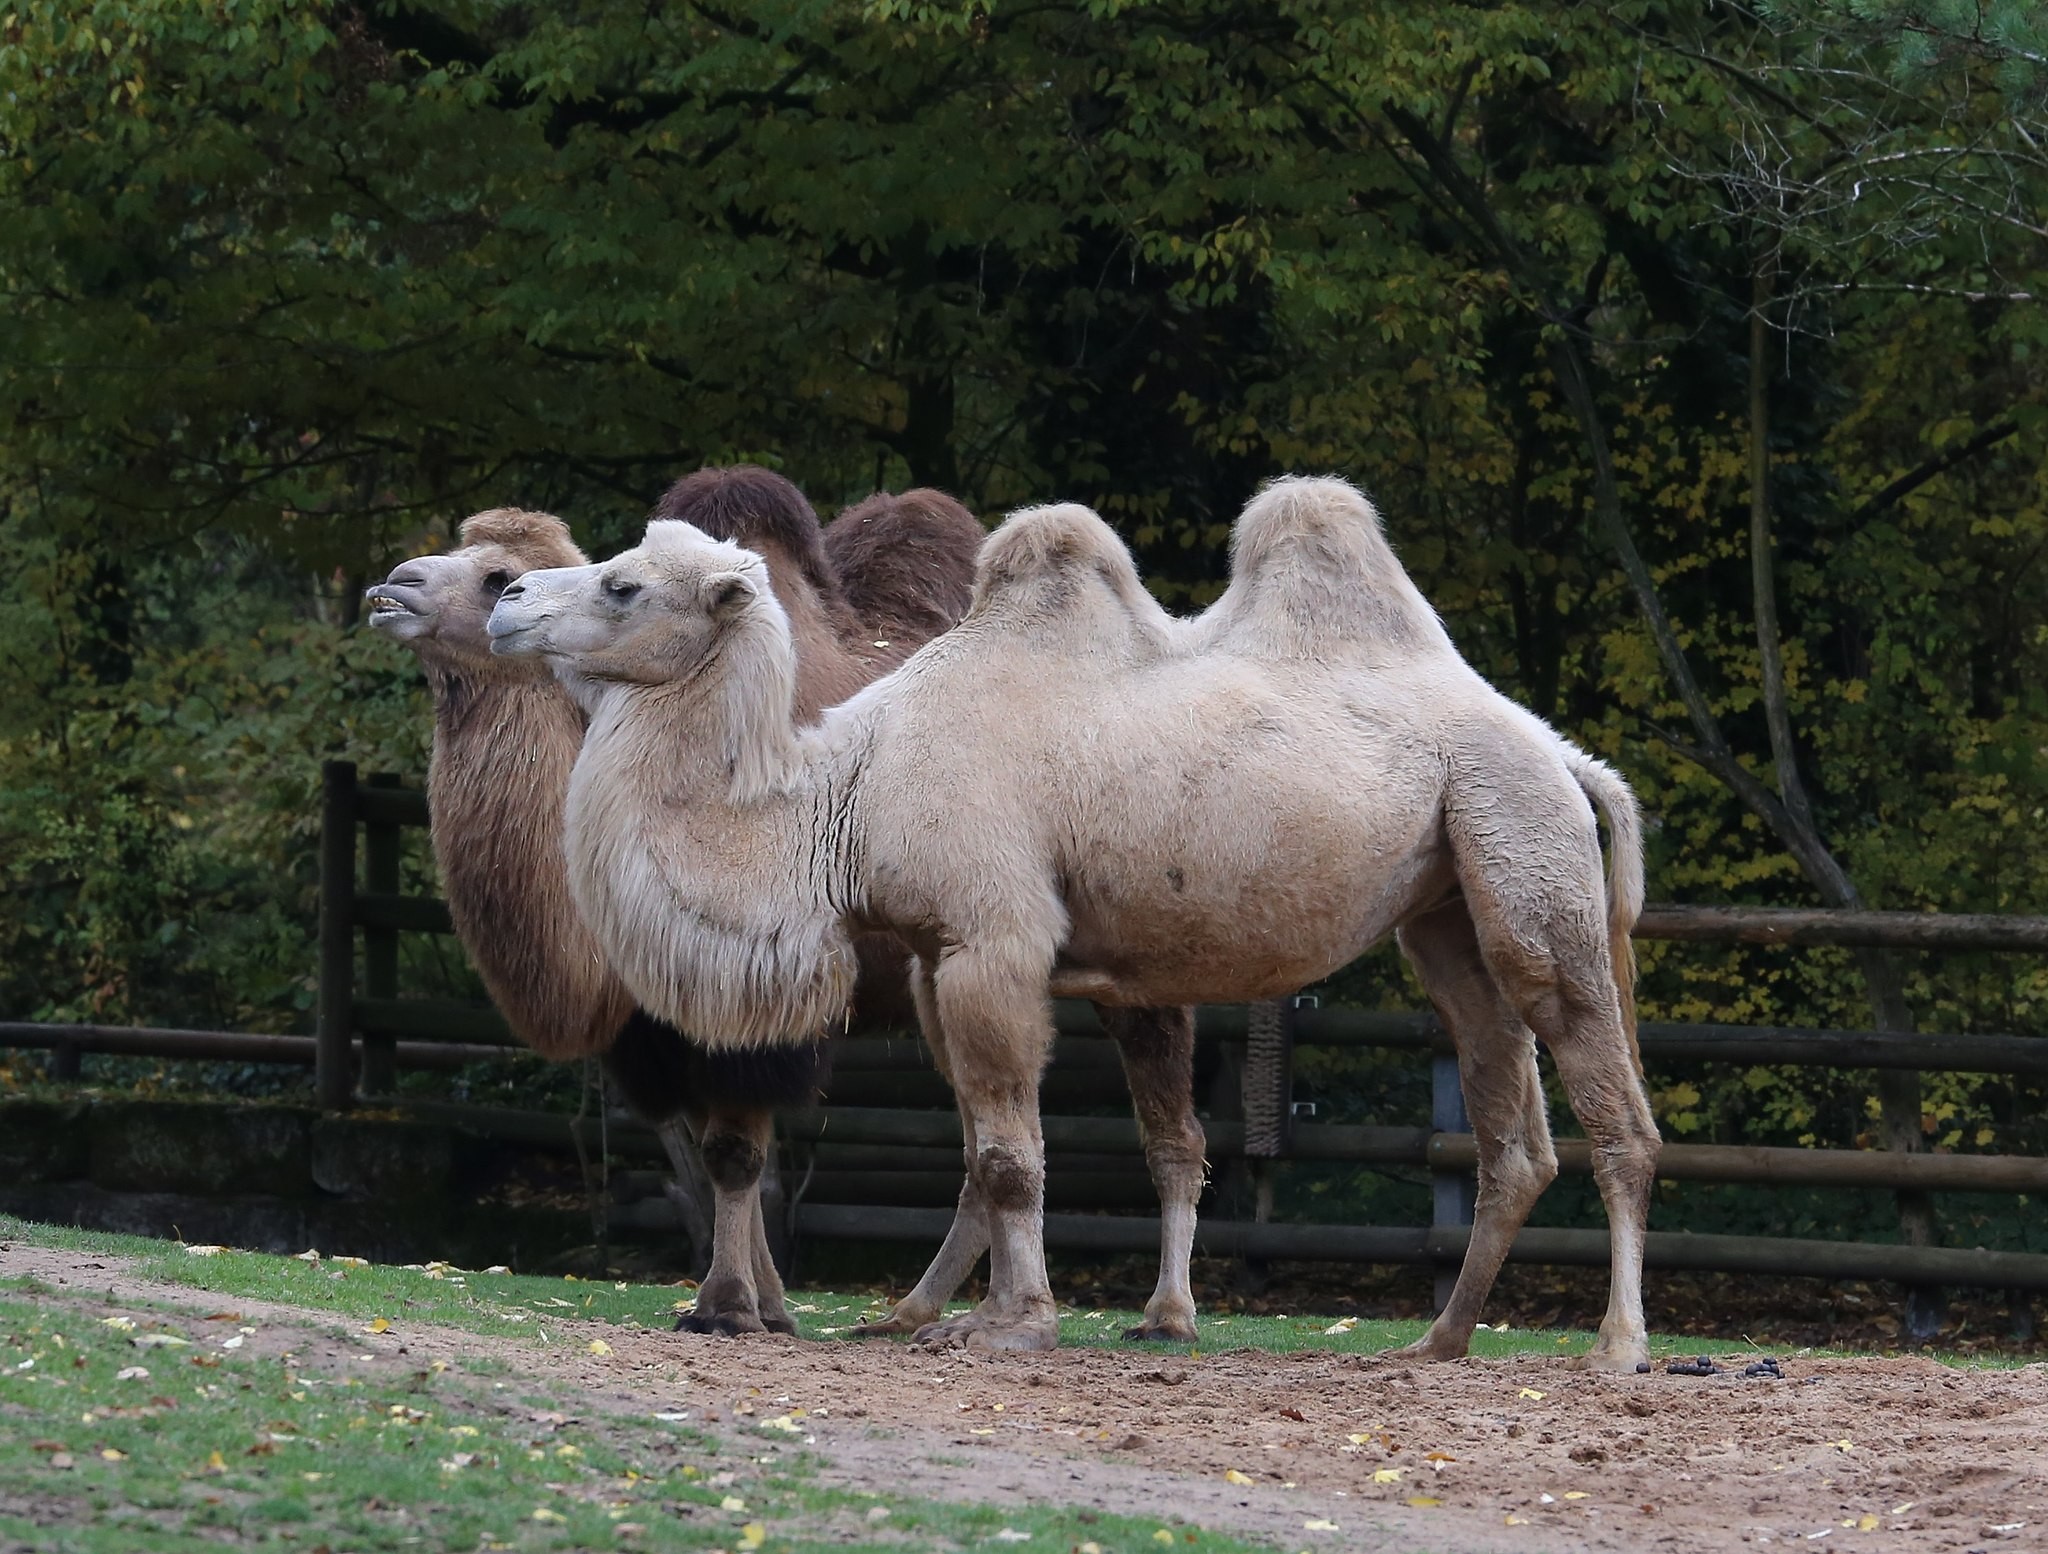 Camelus ferus, espécie de camelo ameada de extinção que teria convivido com o C. knoblochi no Pleistoceno (Foto: Wikimedia Commons)